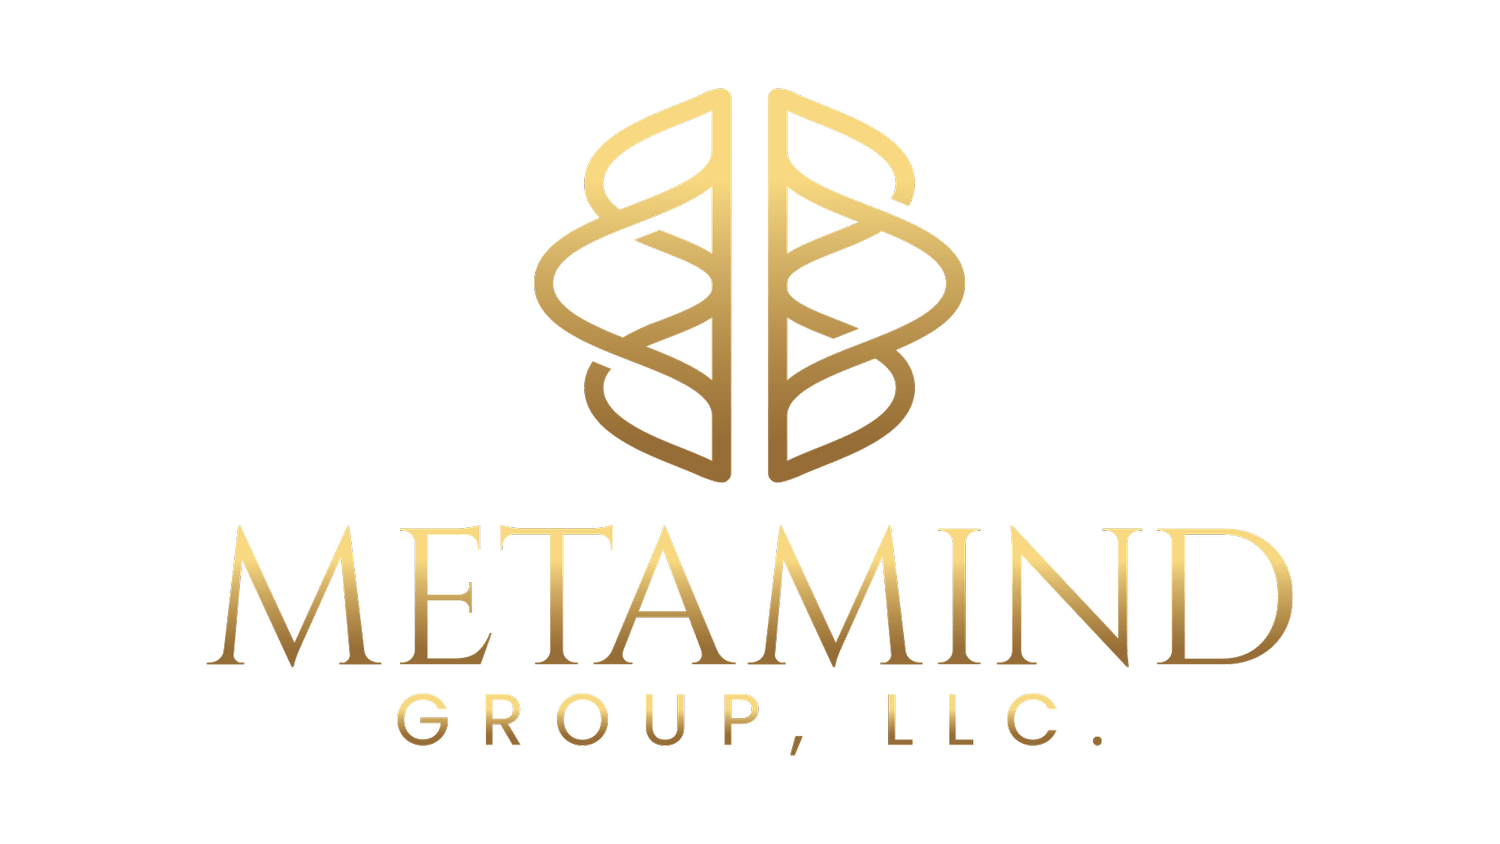 MetaMind Group, LLC